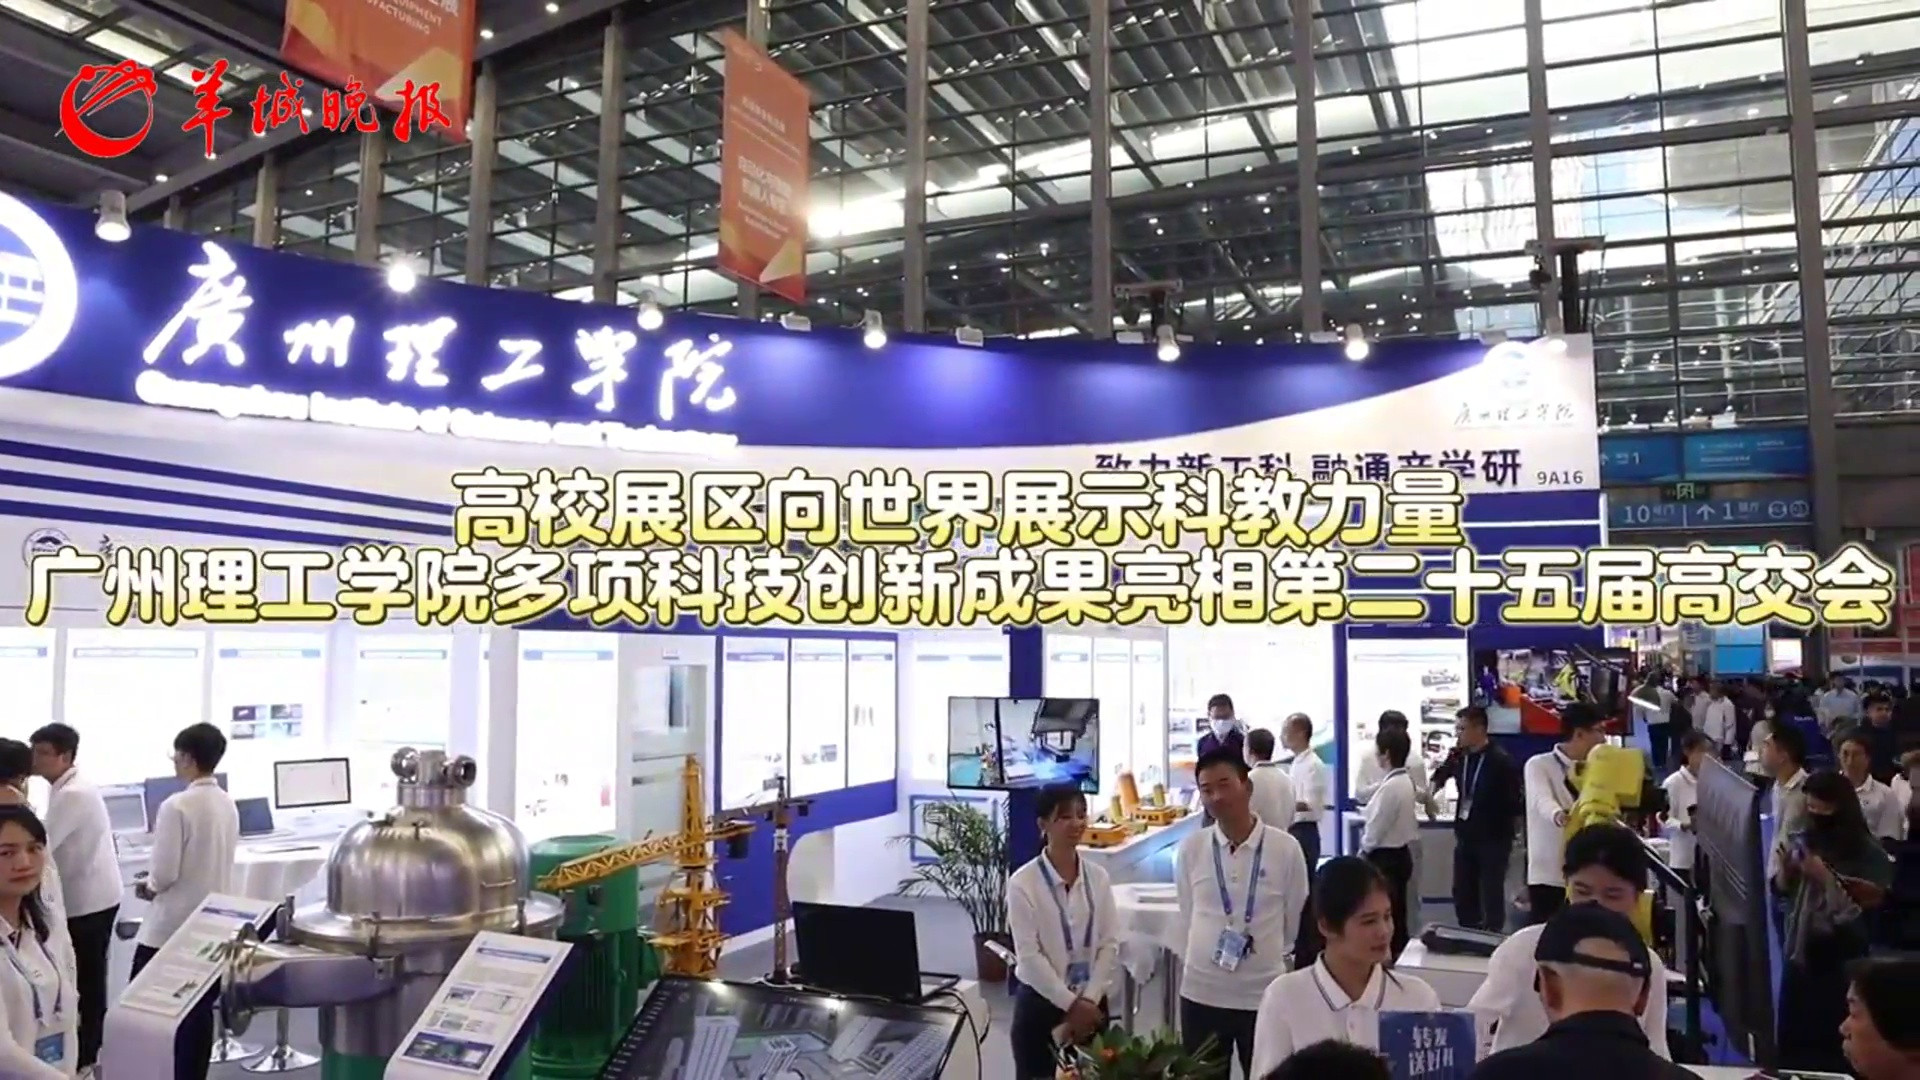 [视频]高校展区向世界展示科教力量, 广州理工学院多项科技创新成果亮相第二十五届高交会